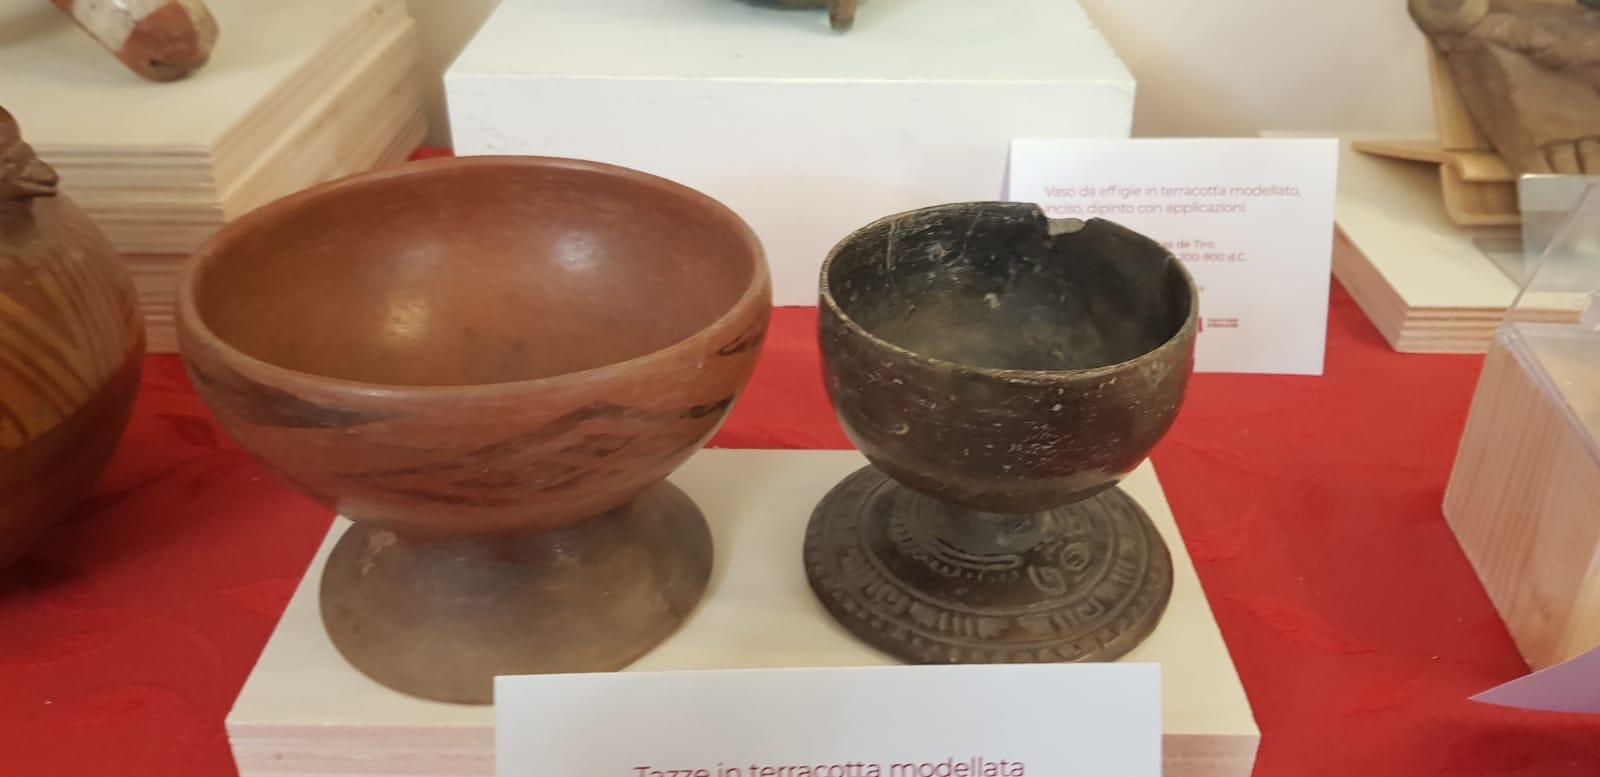 México recupera 30 piezas arqueológicas de Italia; regresa documentos de escultor